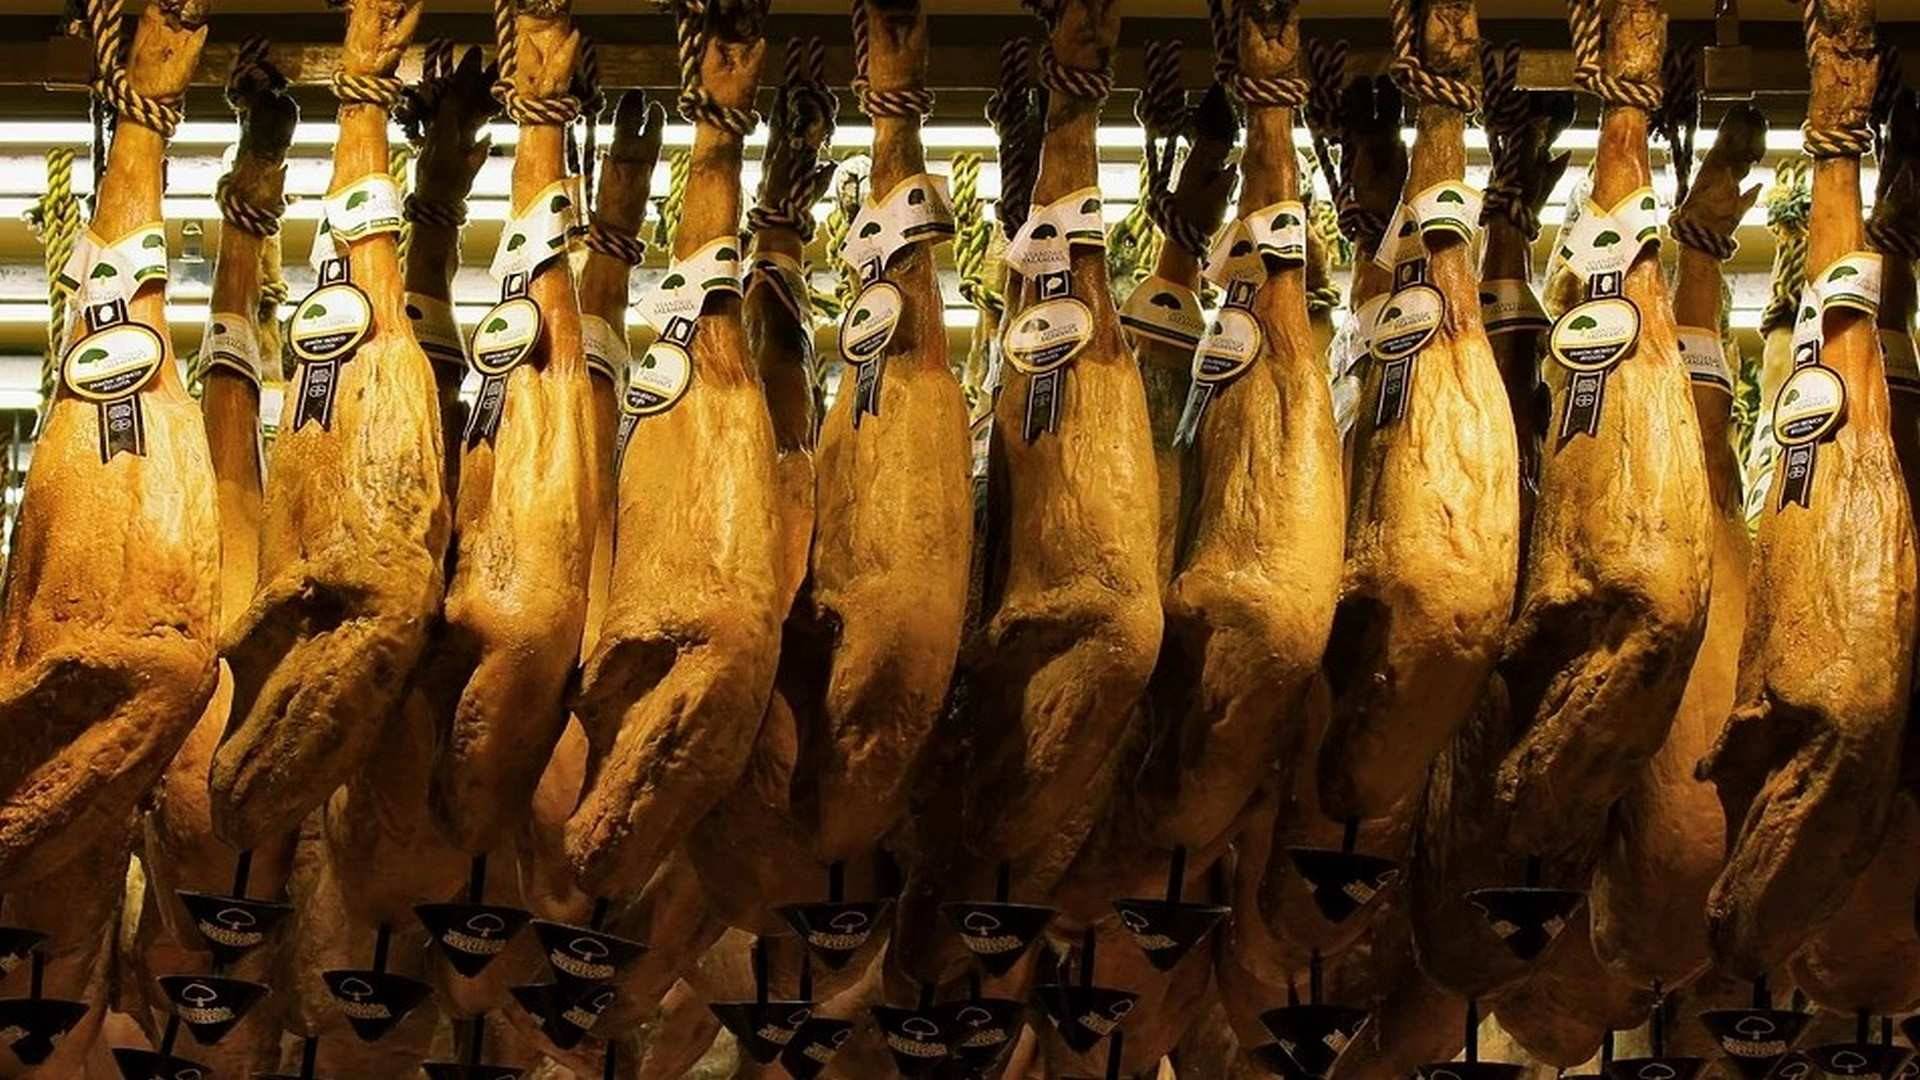 En 2019 se exportaron a China más de 48.000 toneladas de jamón, según el Consorcio del Jamón Serrano Español (CJSE).